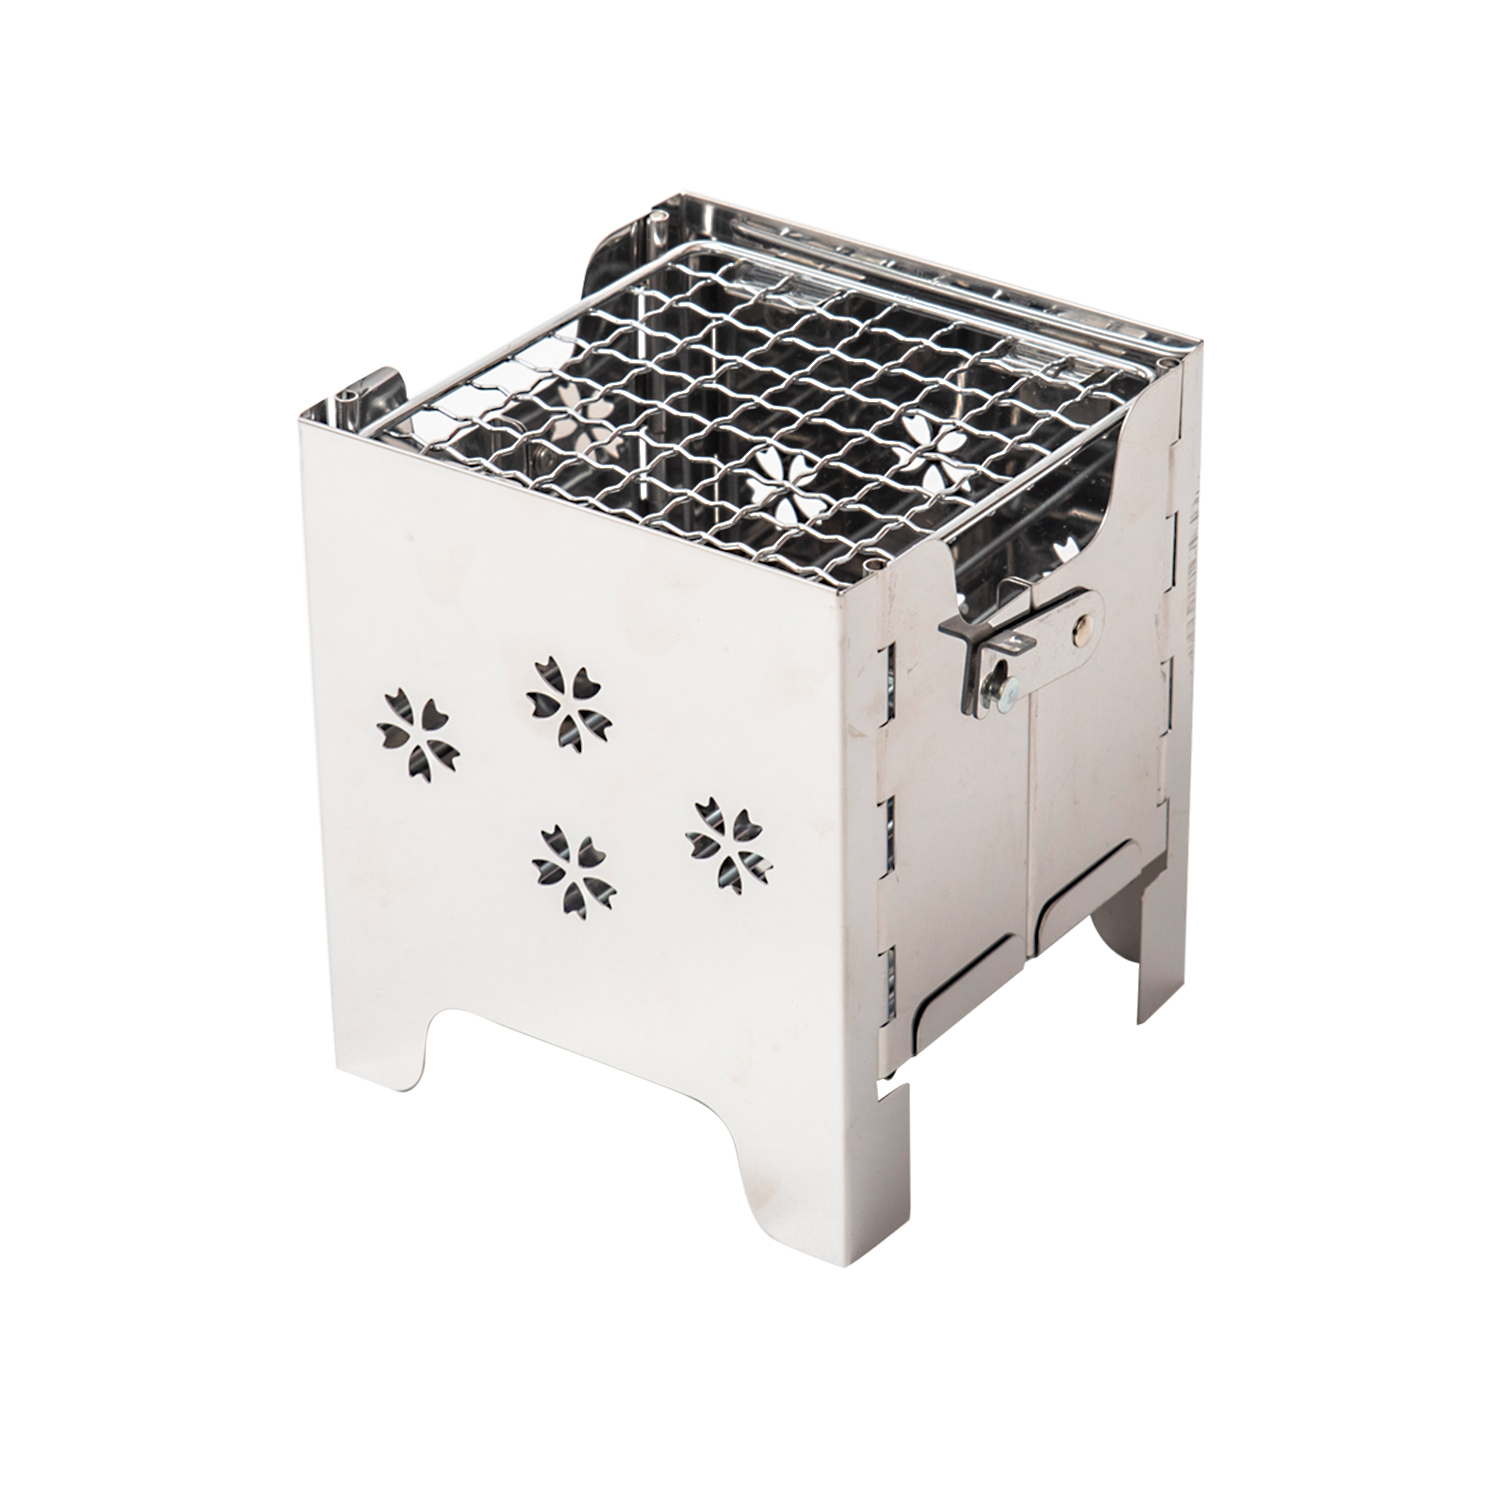 バーベキュー クリーニングブラシ バーベキューキット キッチンアクセサリー ステンレス鋼 調理器具